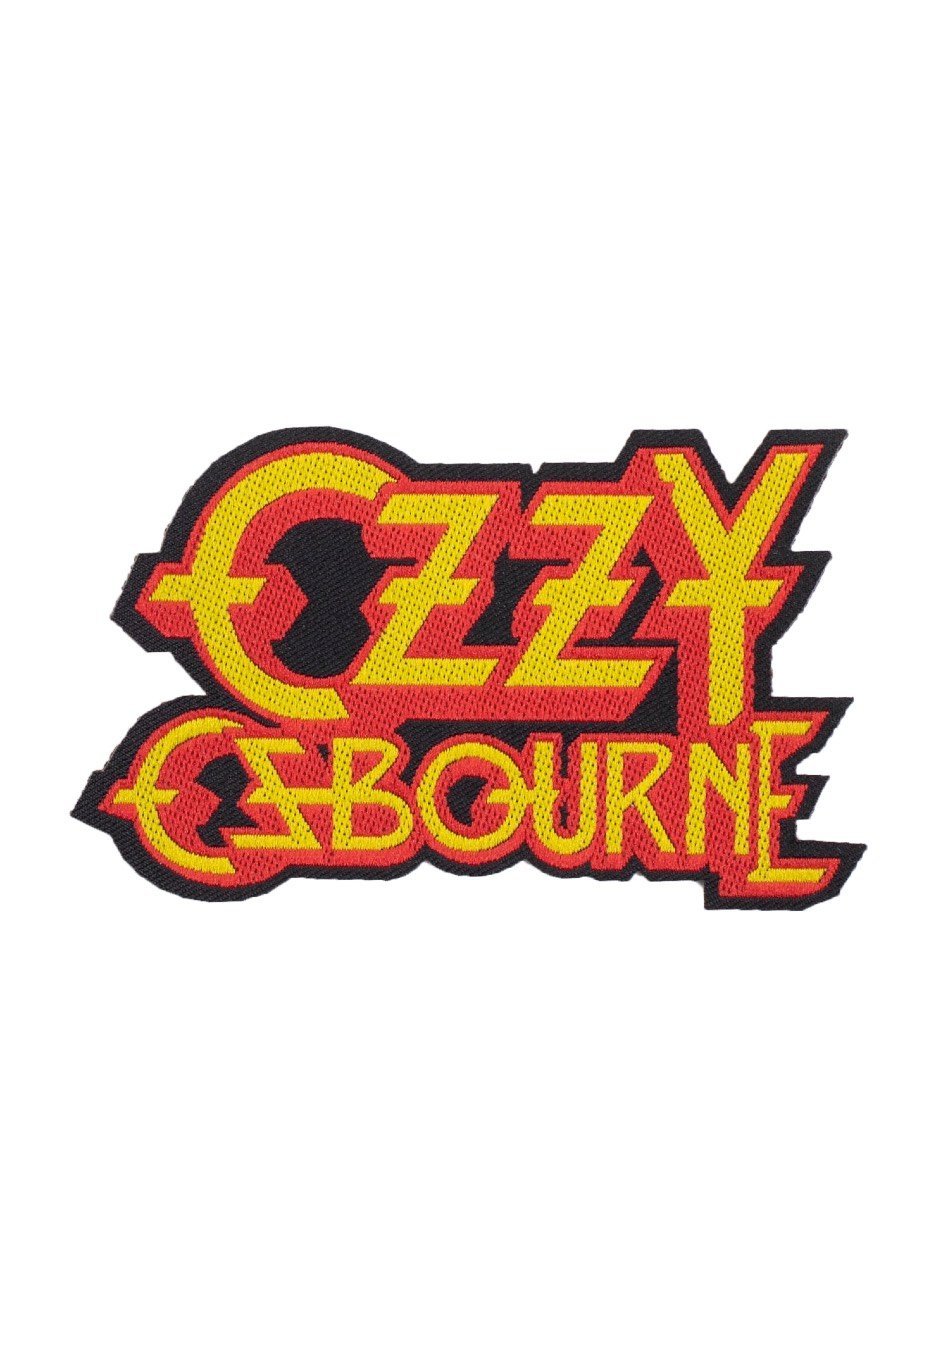 Ozzy Osbourne - Logo Cut - Patch